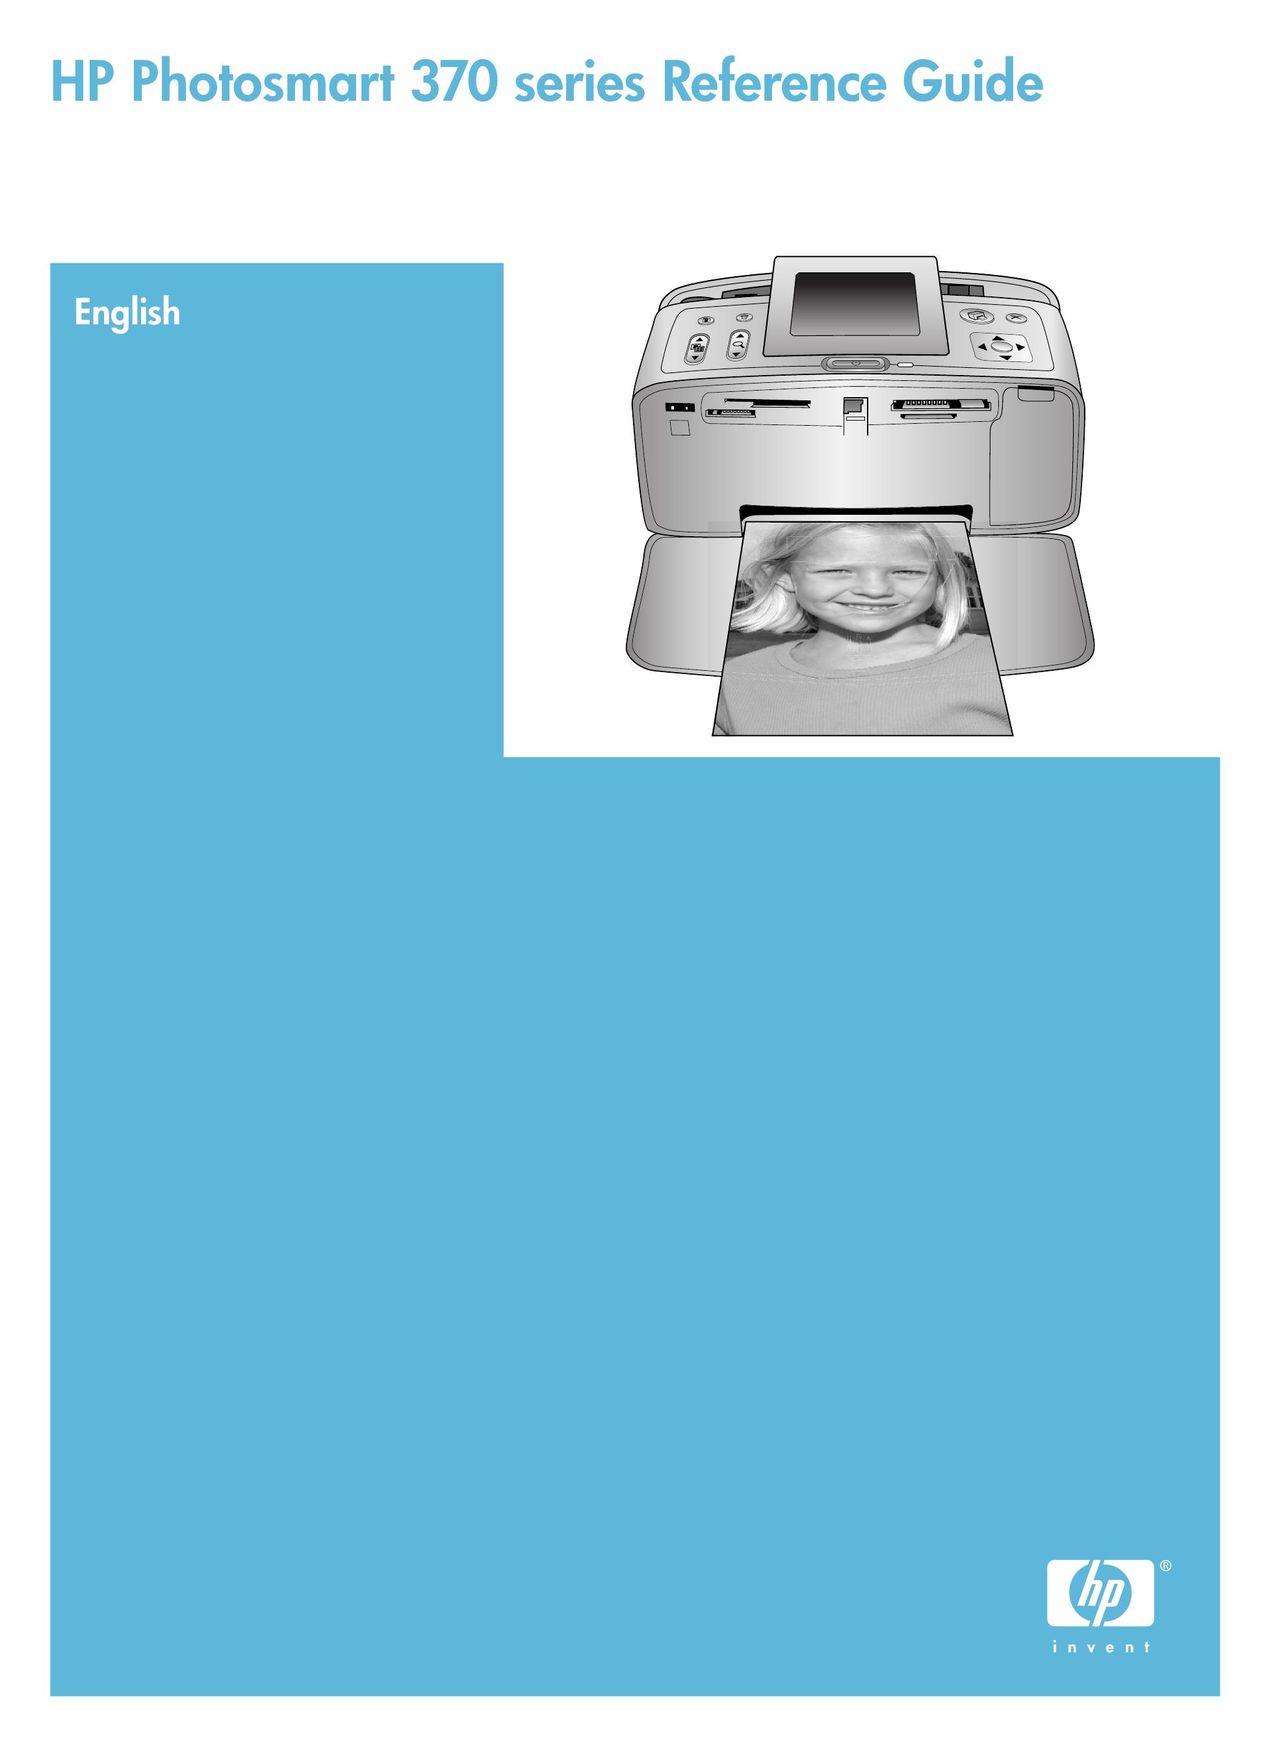 Olympus 370 series Printer User Manual